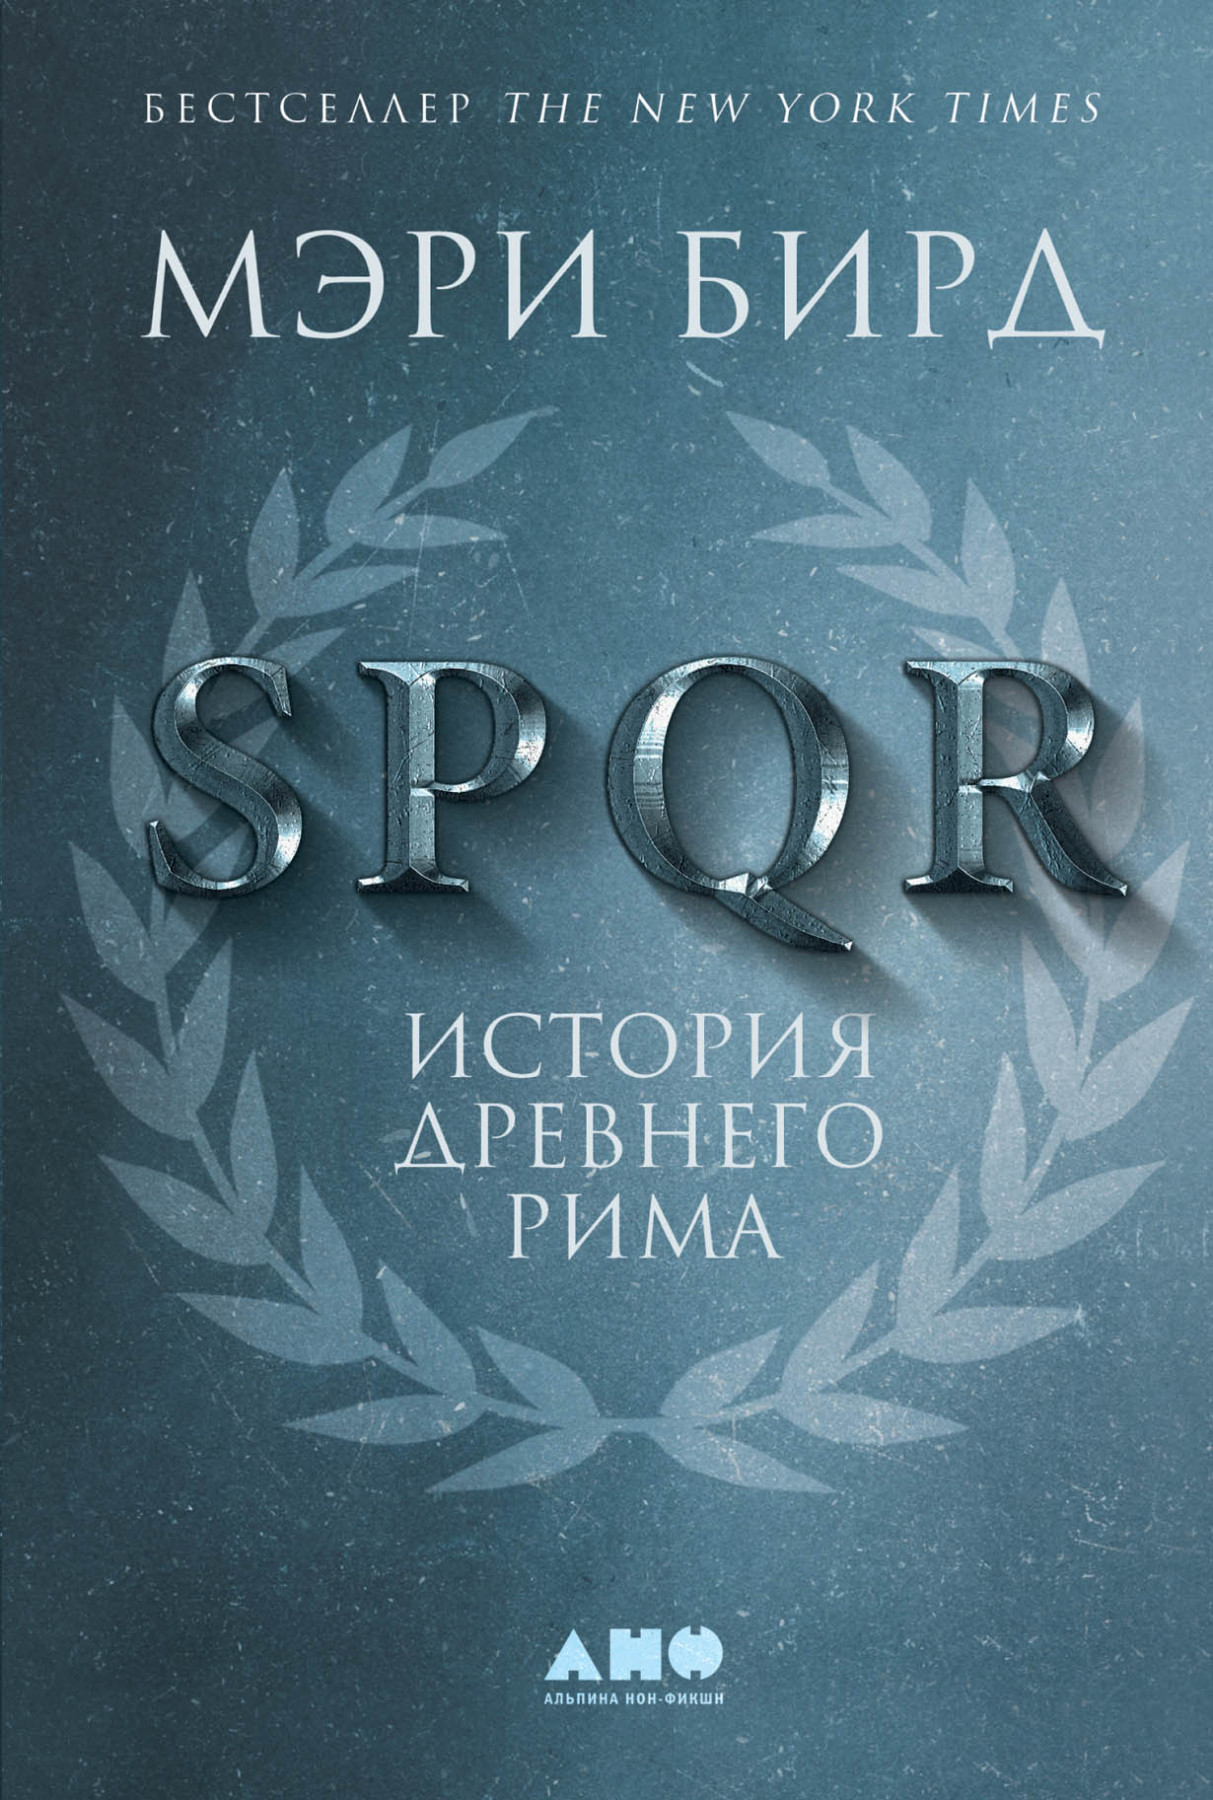 Бирд М. SPQR. История Древнего Рима | (Альпина, тверд.)